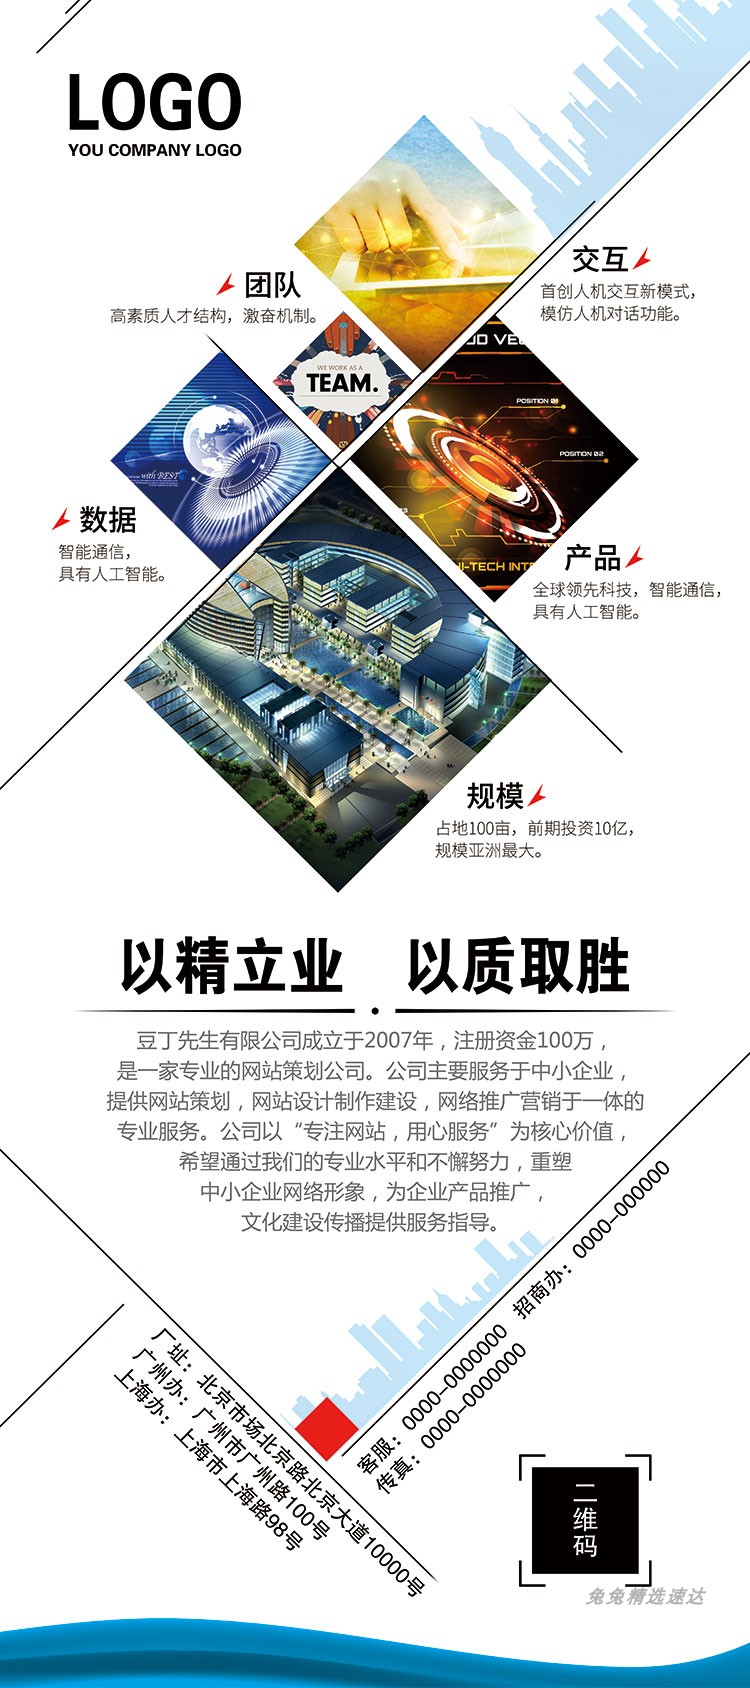 企业公司介绍宣传商务x展架促销活动易拉宝PSD海报广告素材模板 第6张